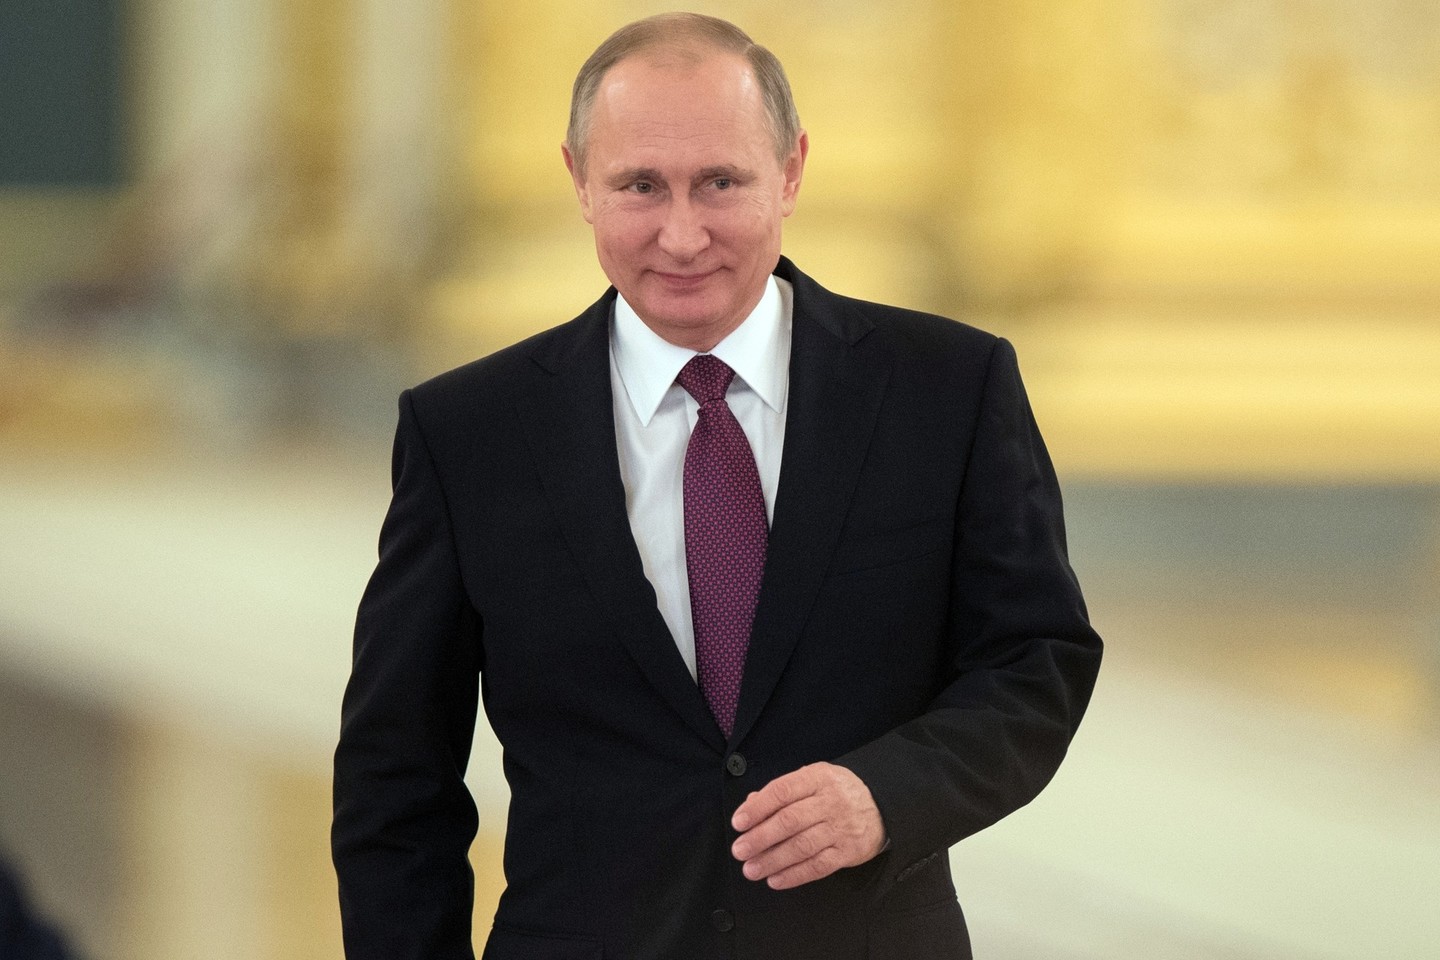 Politinė įtampa padidėjo Rusijos prezidentui V.Putinui pradėjus agresyvią užsienio politiką.<br>Sputnik nuotr.